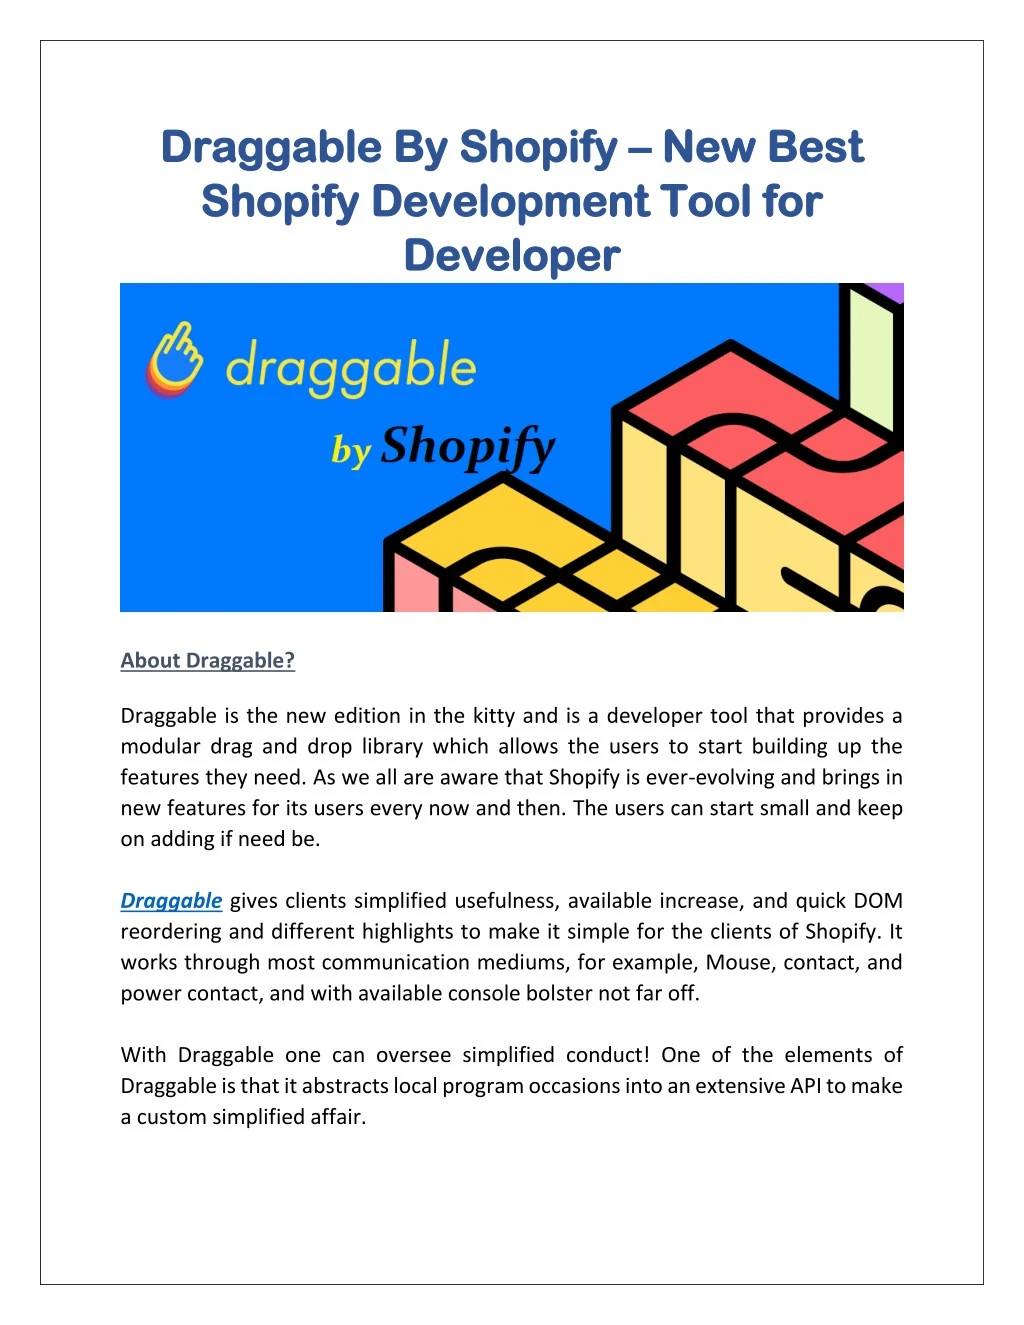 draggable by shopify draggable by shopify